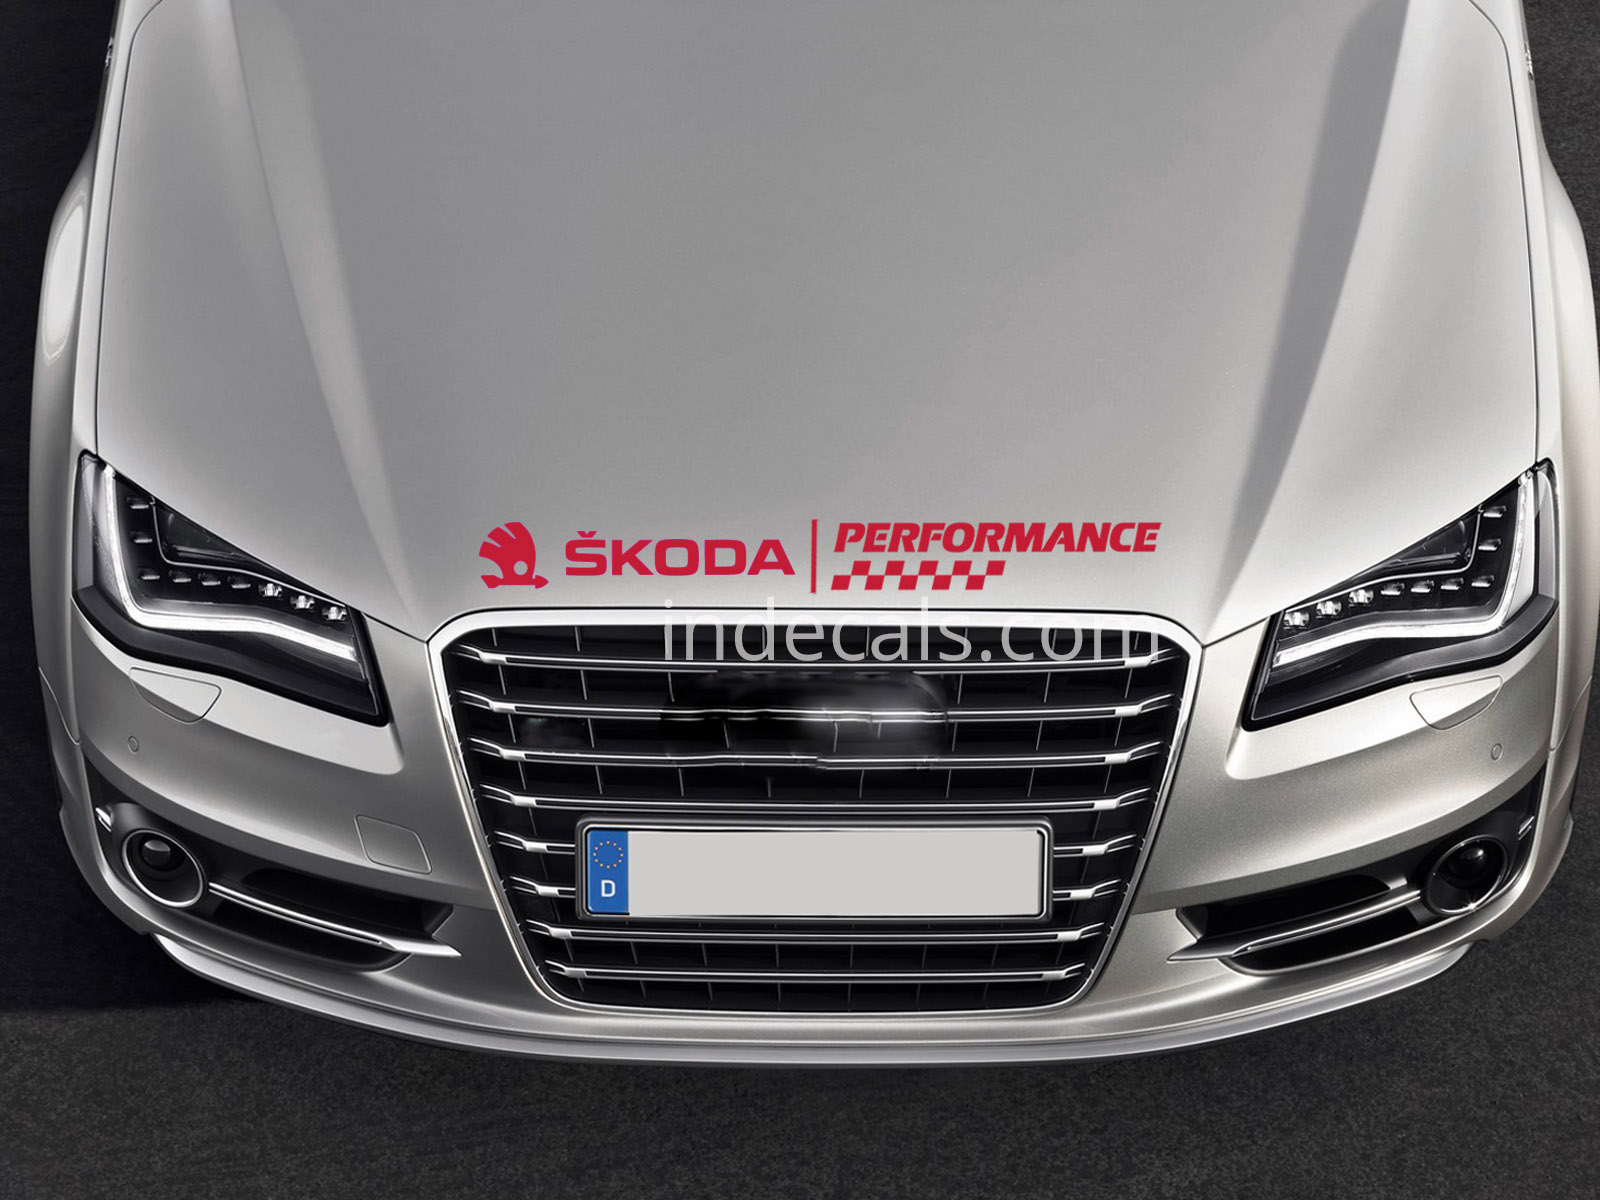 1 x Skoda Performance Sticker for Bonnet - Red